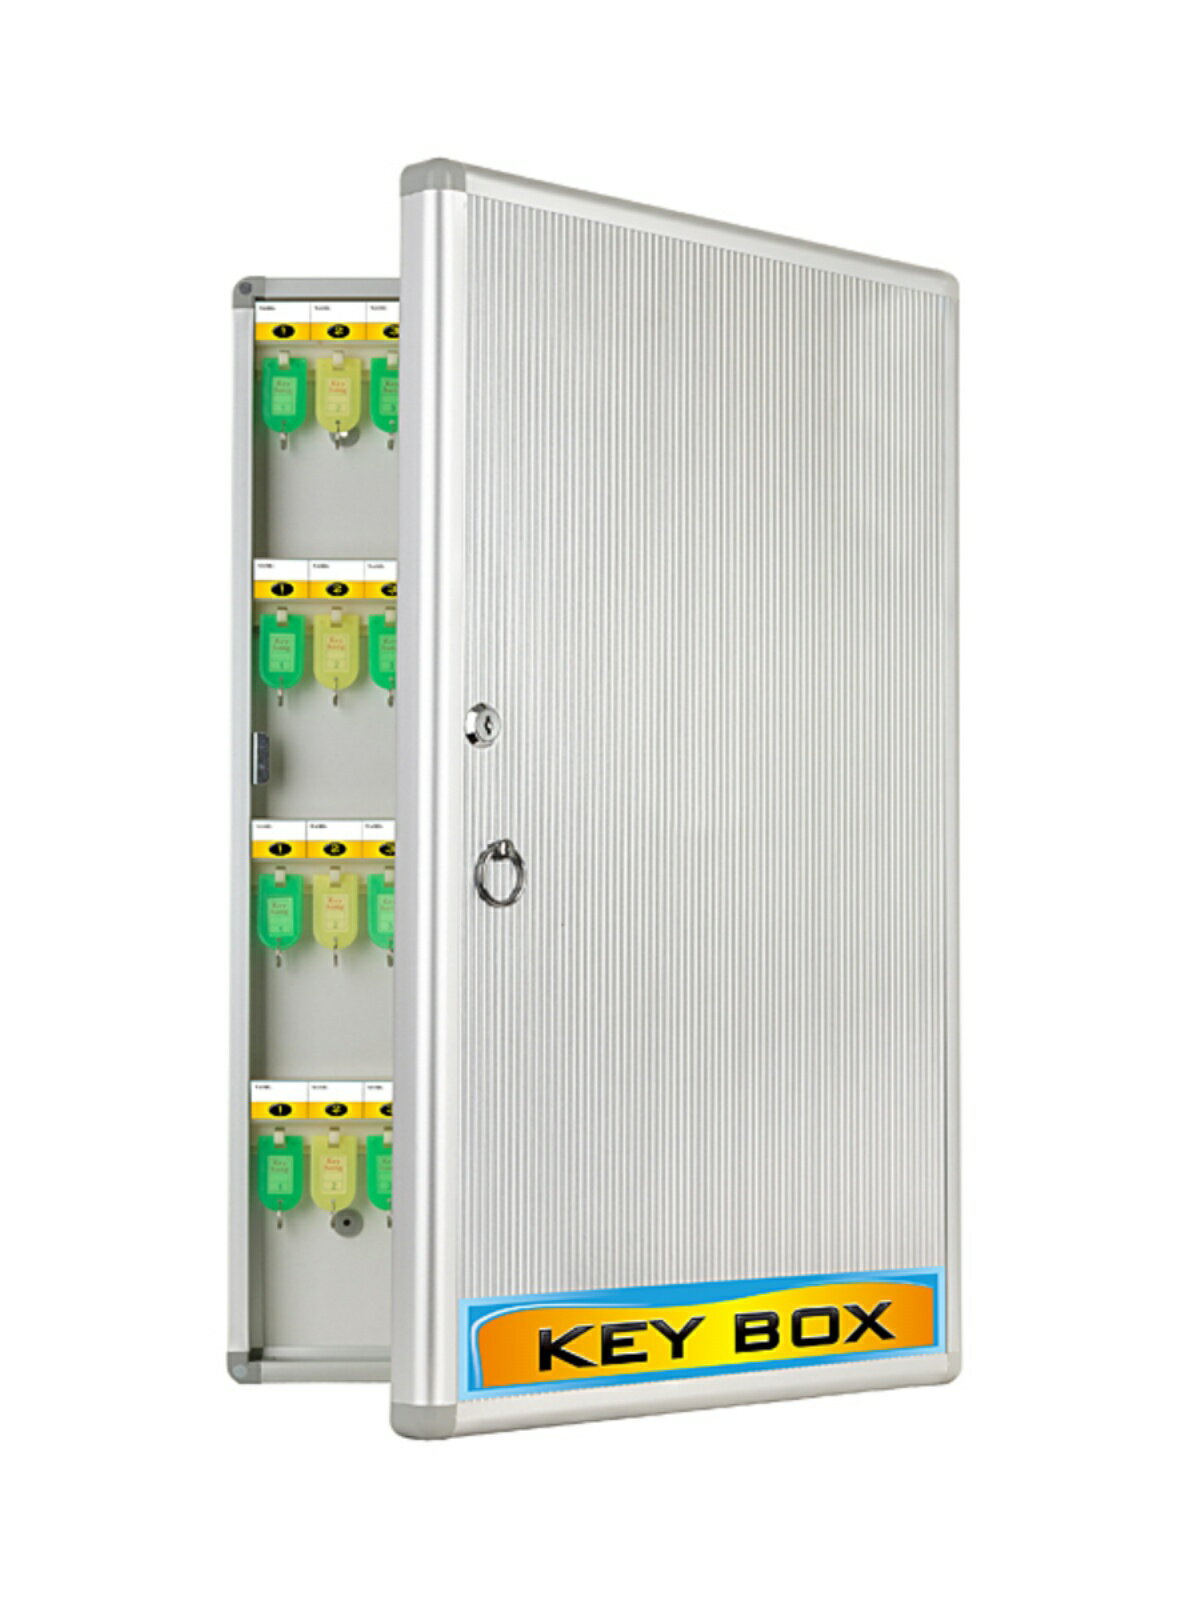 鑰匙箱 鑰匙盒 鑰匙保管箱 鑰匙箱120位鋁合金鑰匙櫃壁掛式管理箱鎖匙箱305位72位48位212位『FY03088』